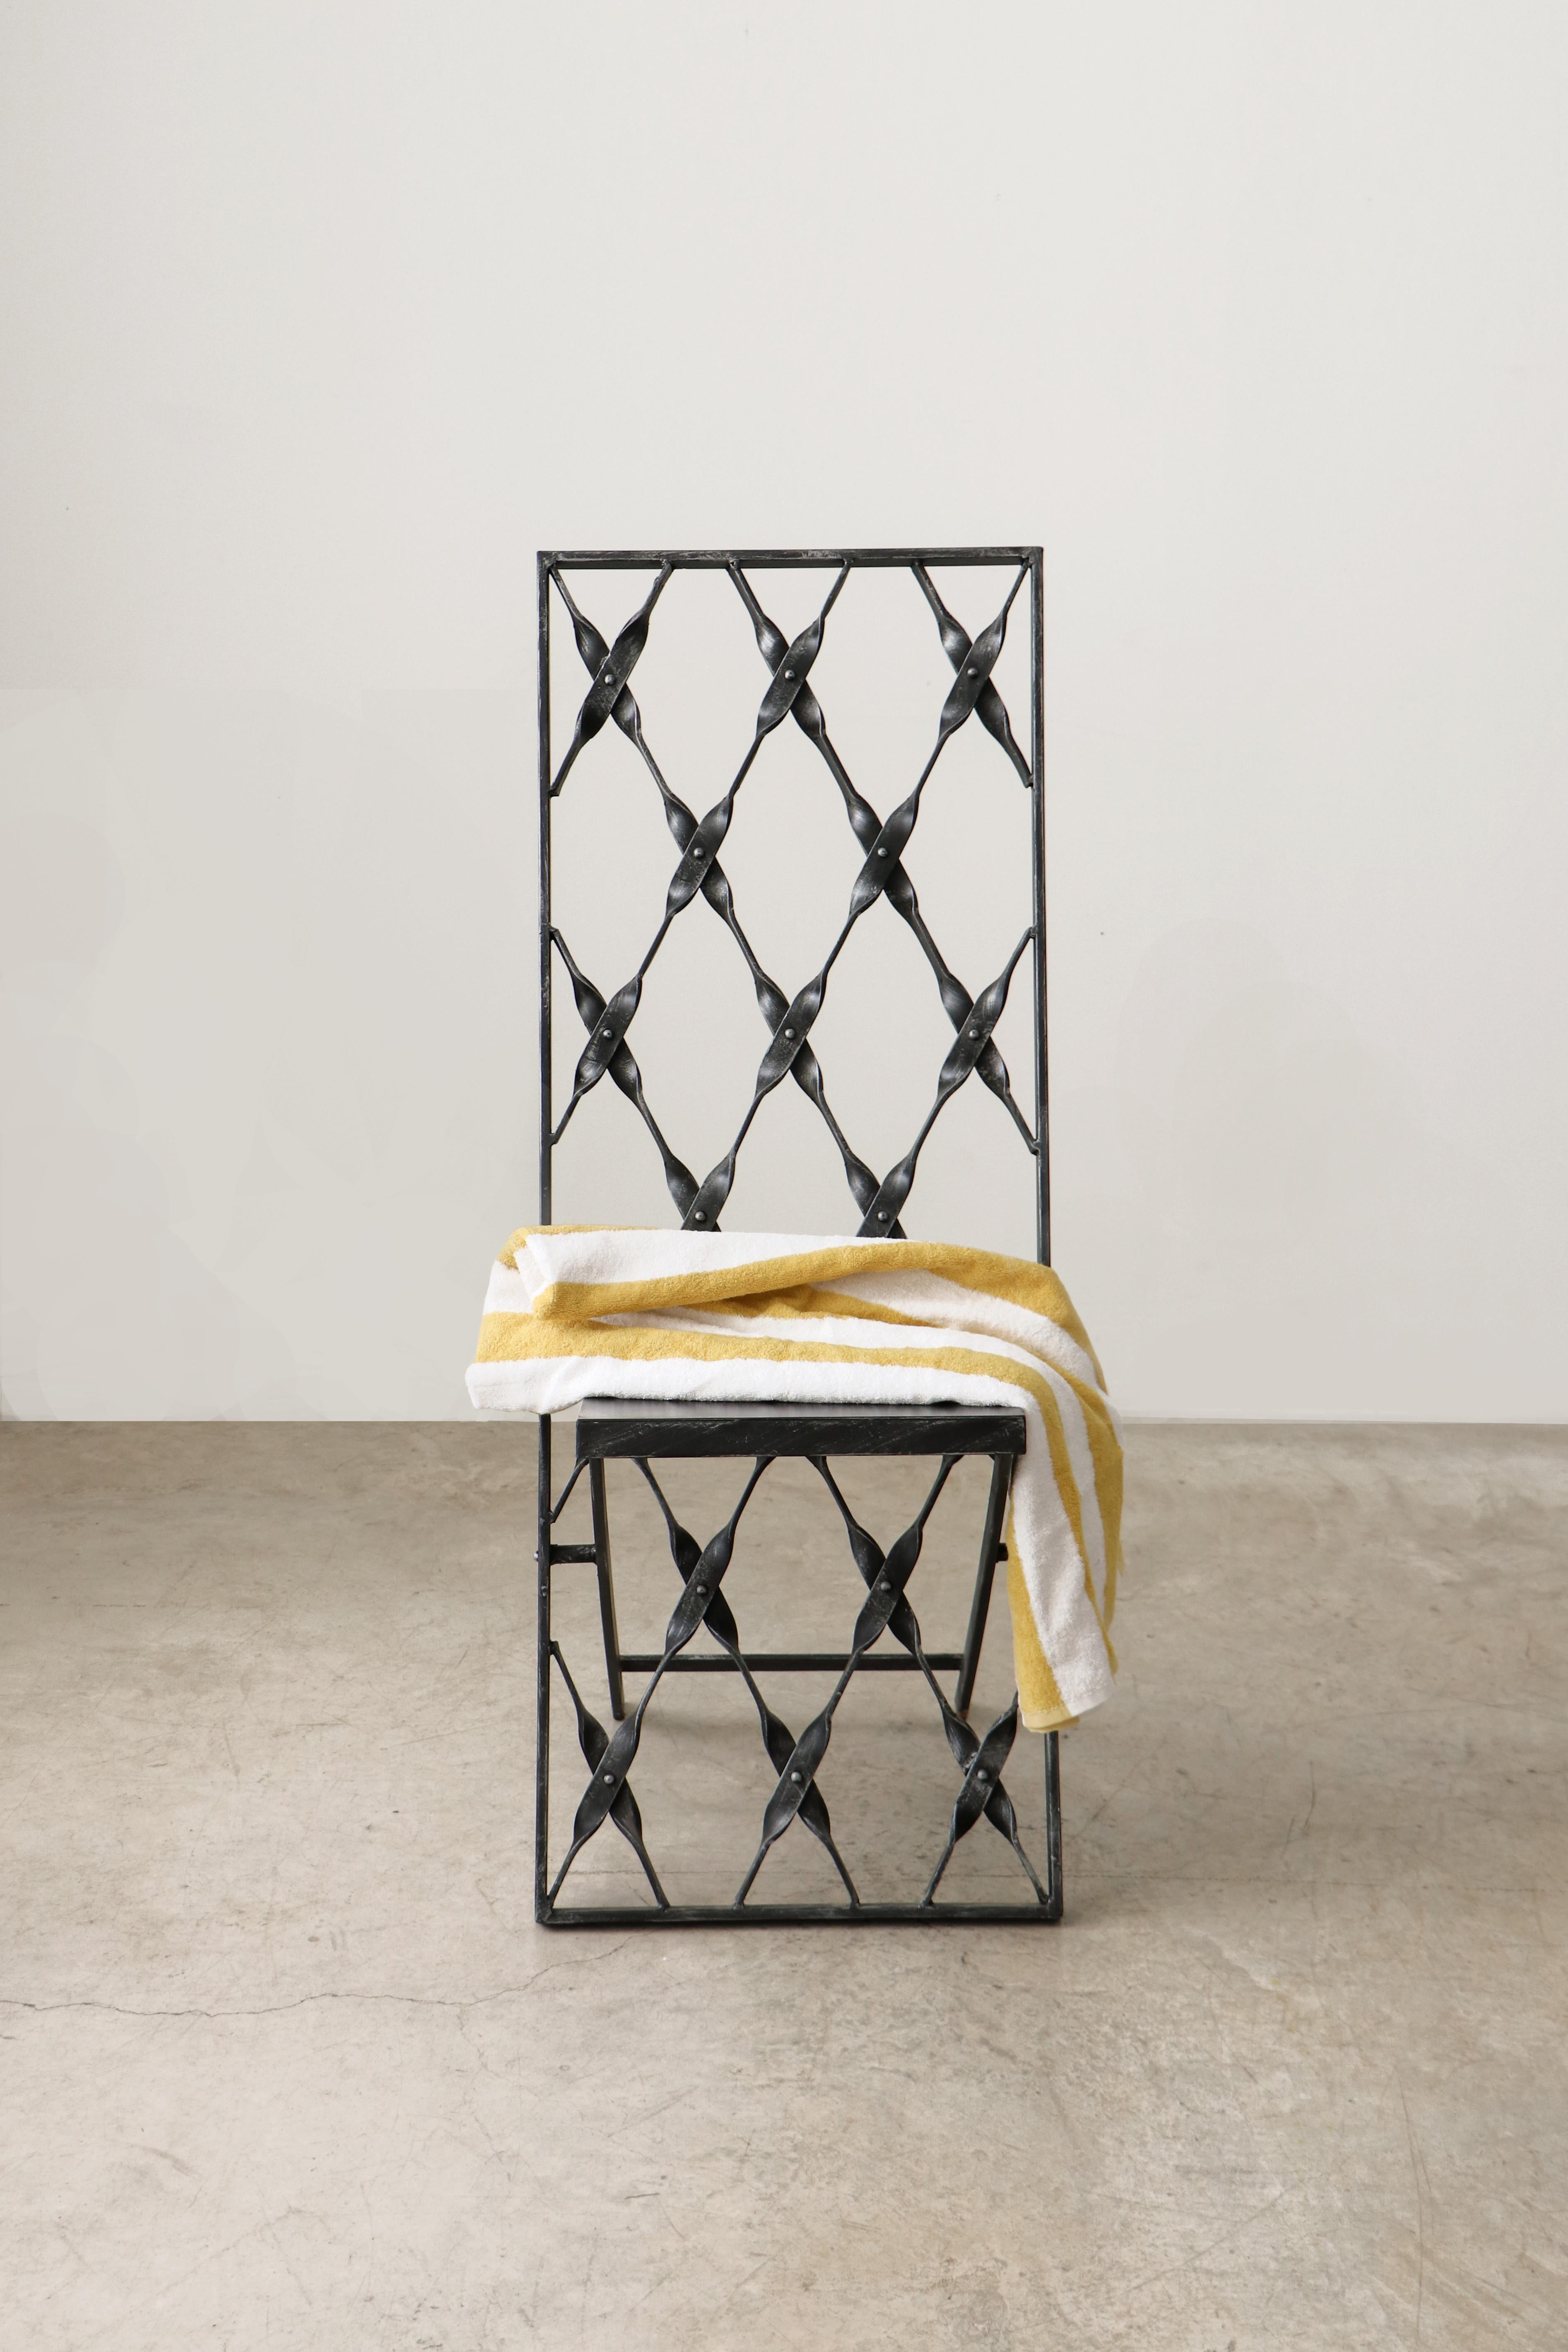 La chaise Fierro est une pièce fonctionnelle de style brutal, fabriquée à 100 % en fer forgé selon un procédé de fabrication artisanal traditionnel.

À travers cette chaise sculpturale, l'artiste veut exprimer l'attrait sensuel de la force de ce